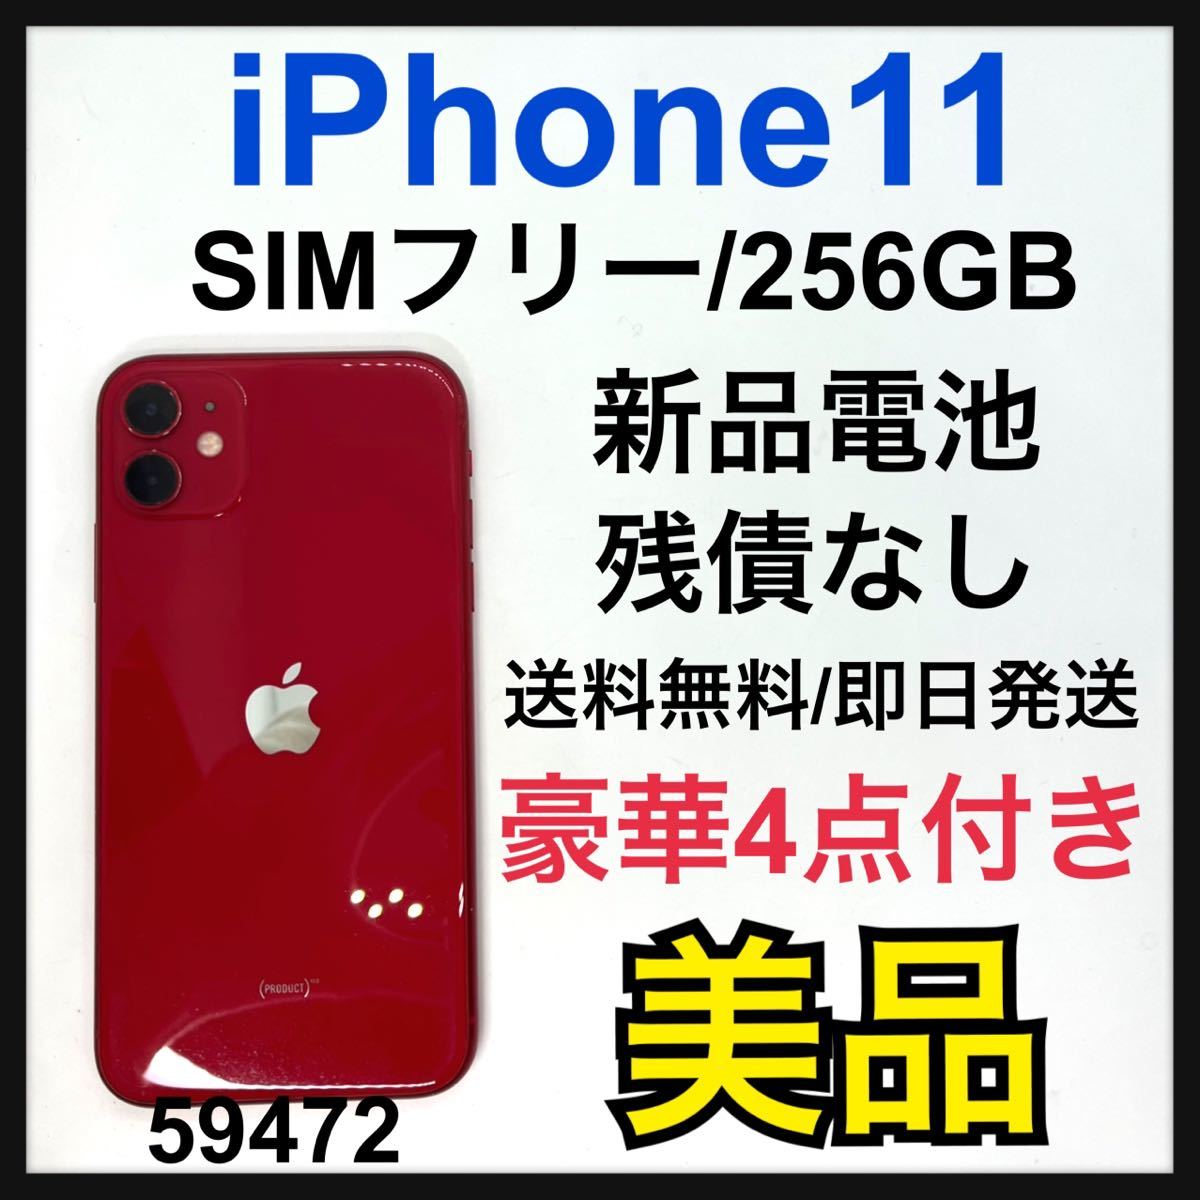 B iPhone 11 (PRODUCT)RED 256 GB SIMフリー スマホ スマホ www